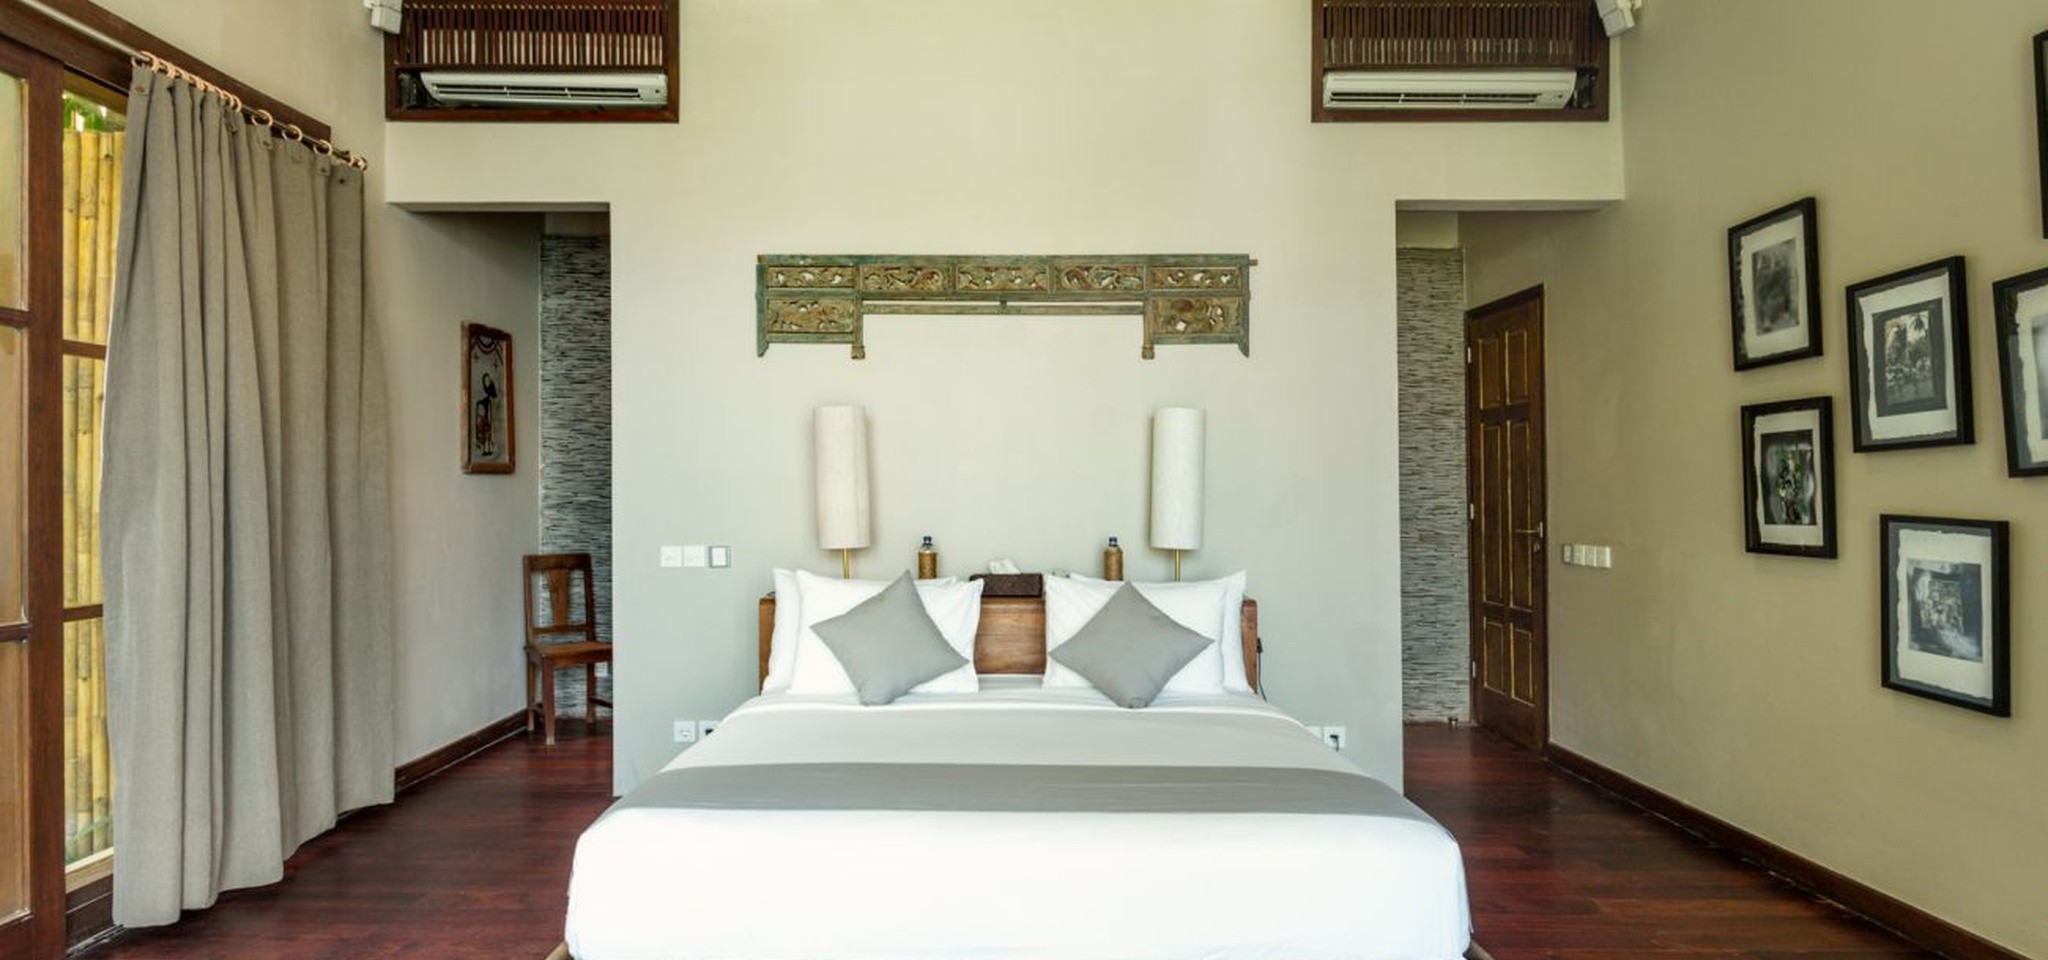 VillaMelissa Bedroom8 – Villa Melissa – Bali – Indonesia